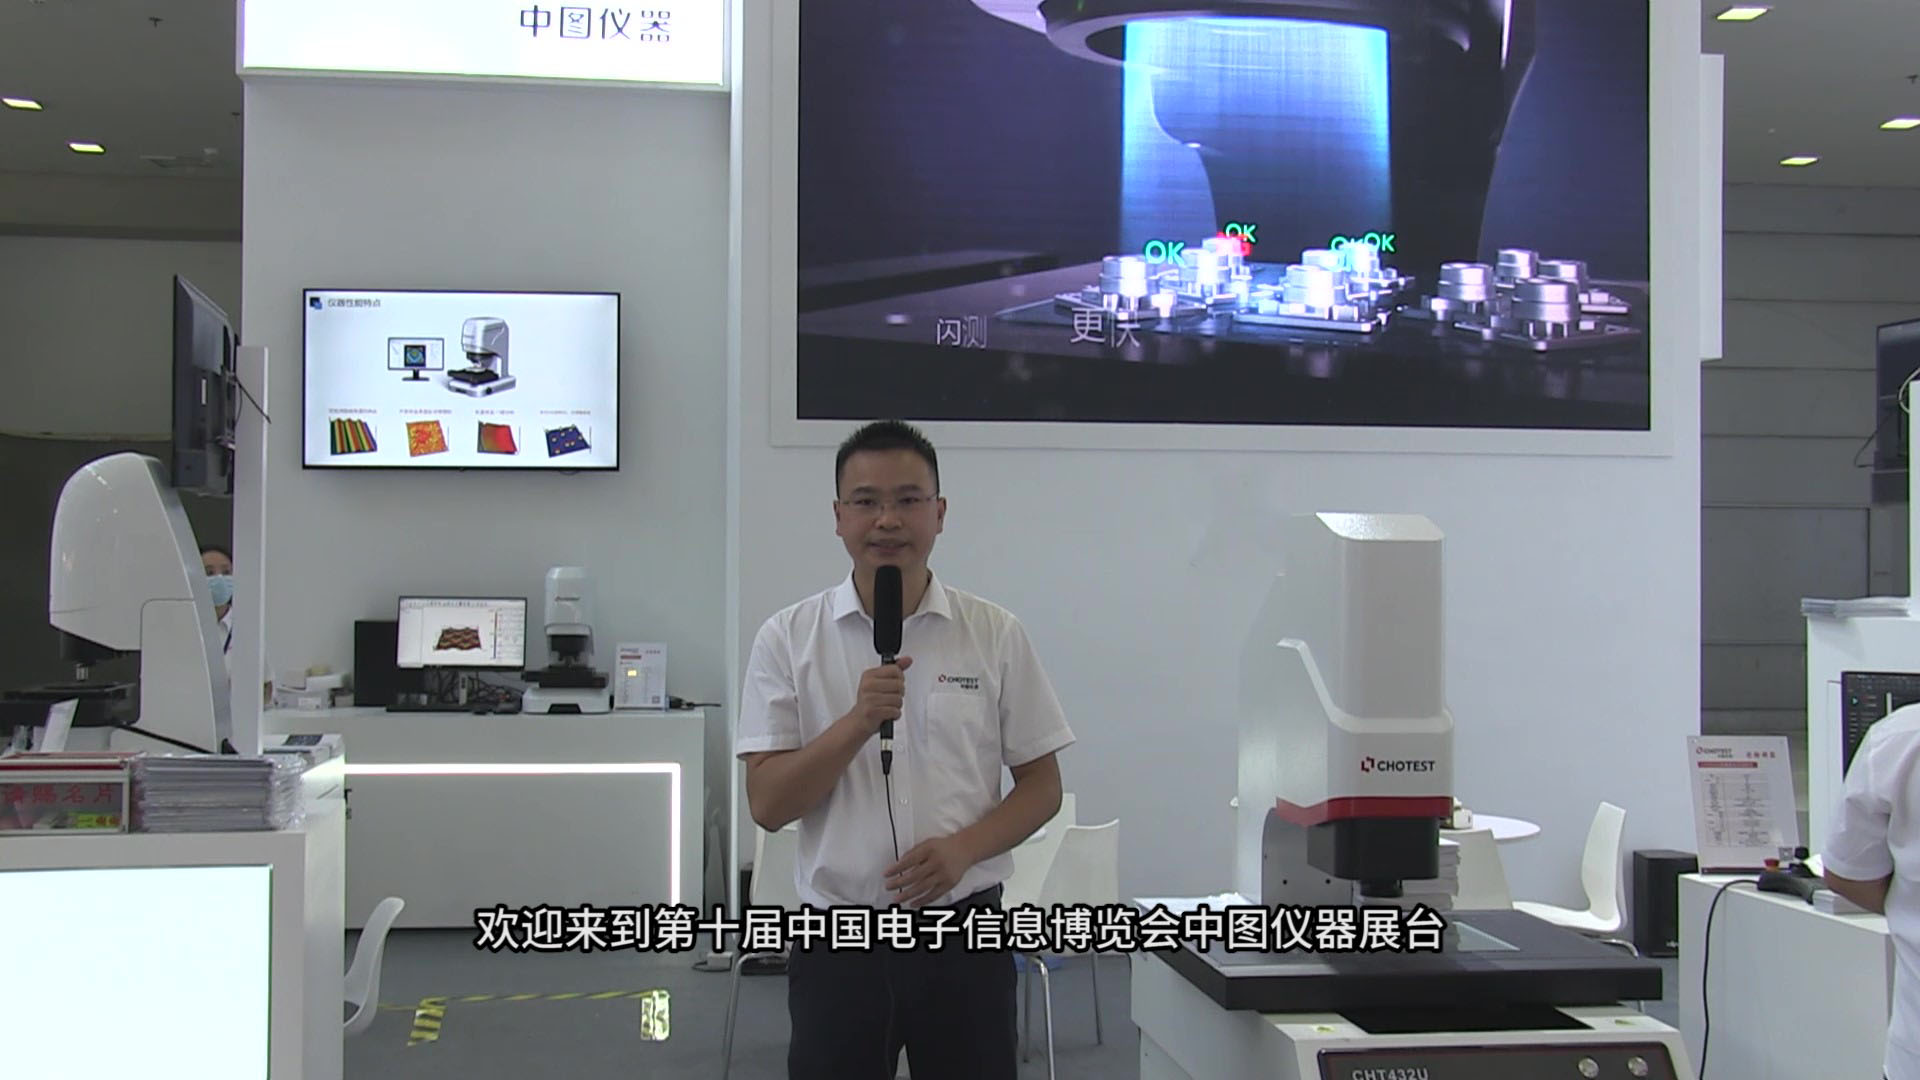 第十届中国电子信息博览会火热进行中，中图仪器在深圳会展中心等您！#电子博览会 #深圳 